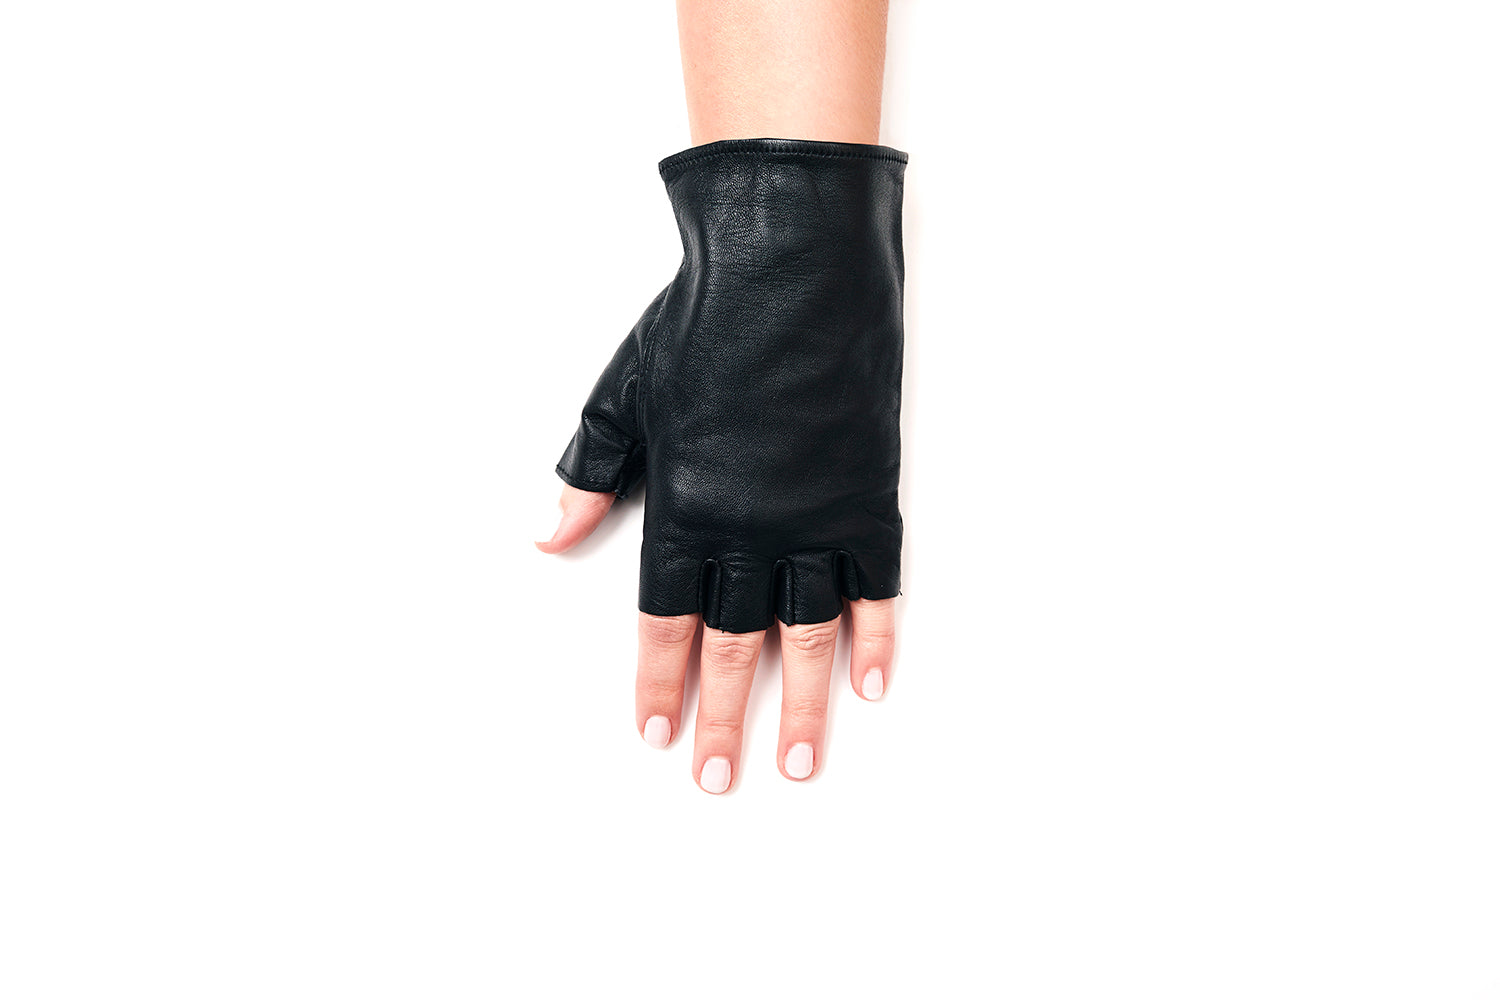 Womens Half Finger Leather Gloves Fingerless